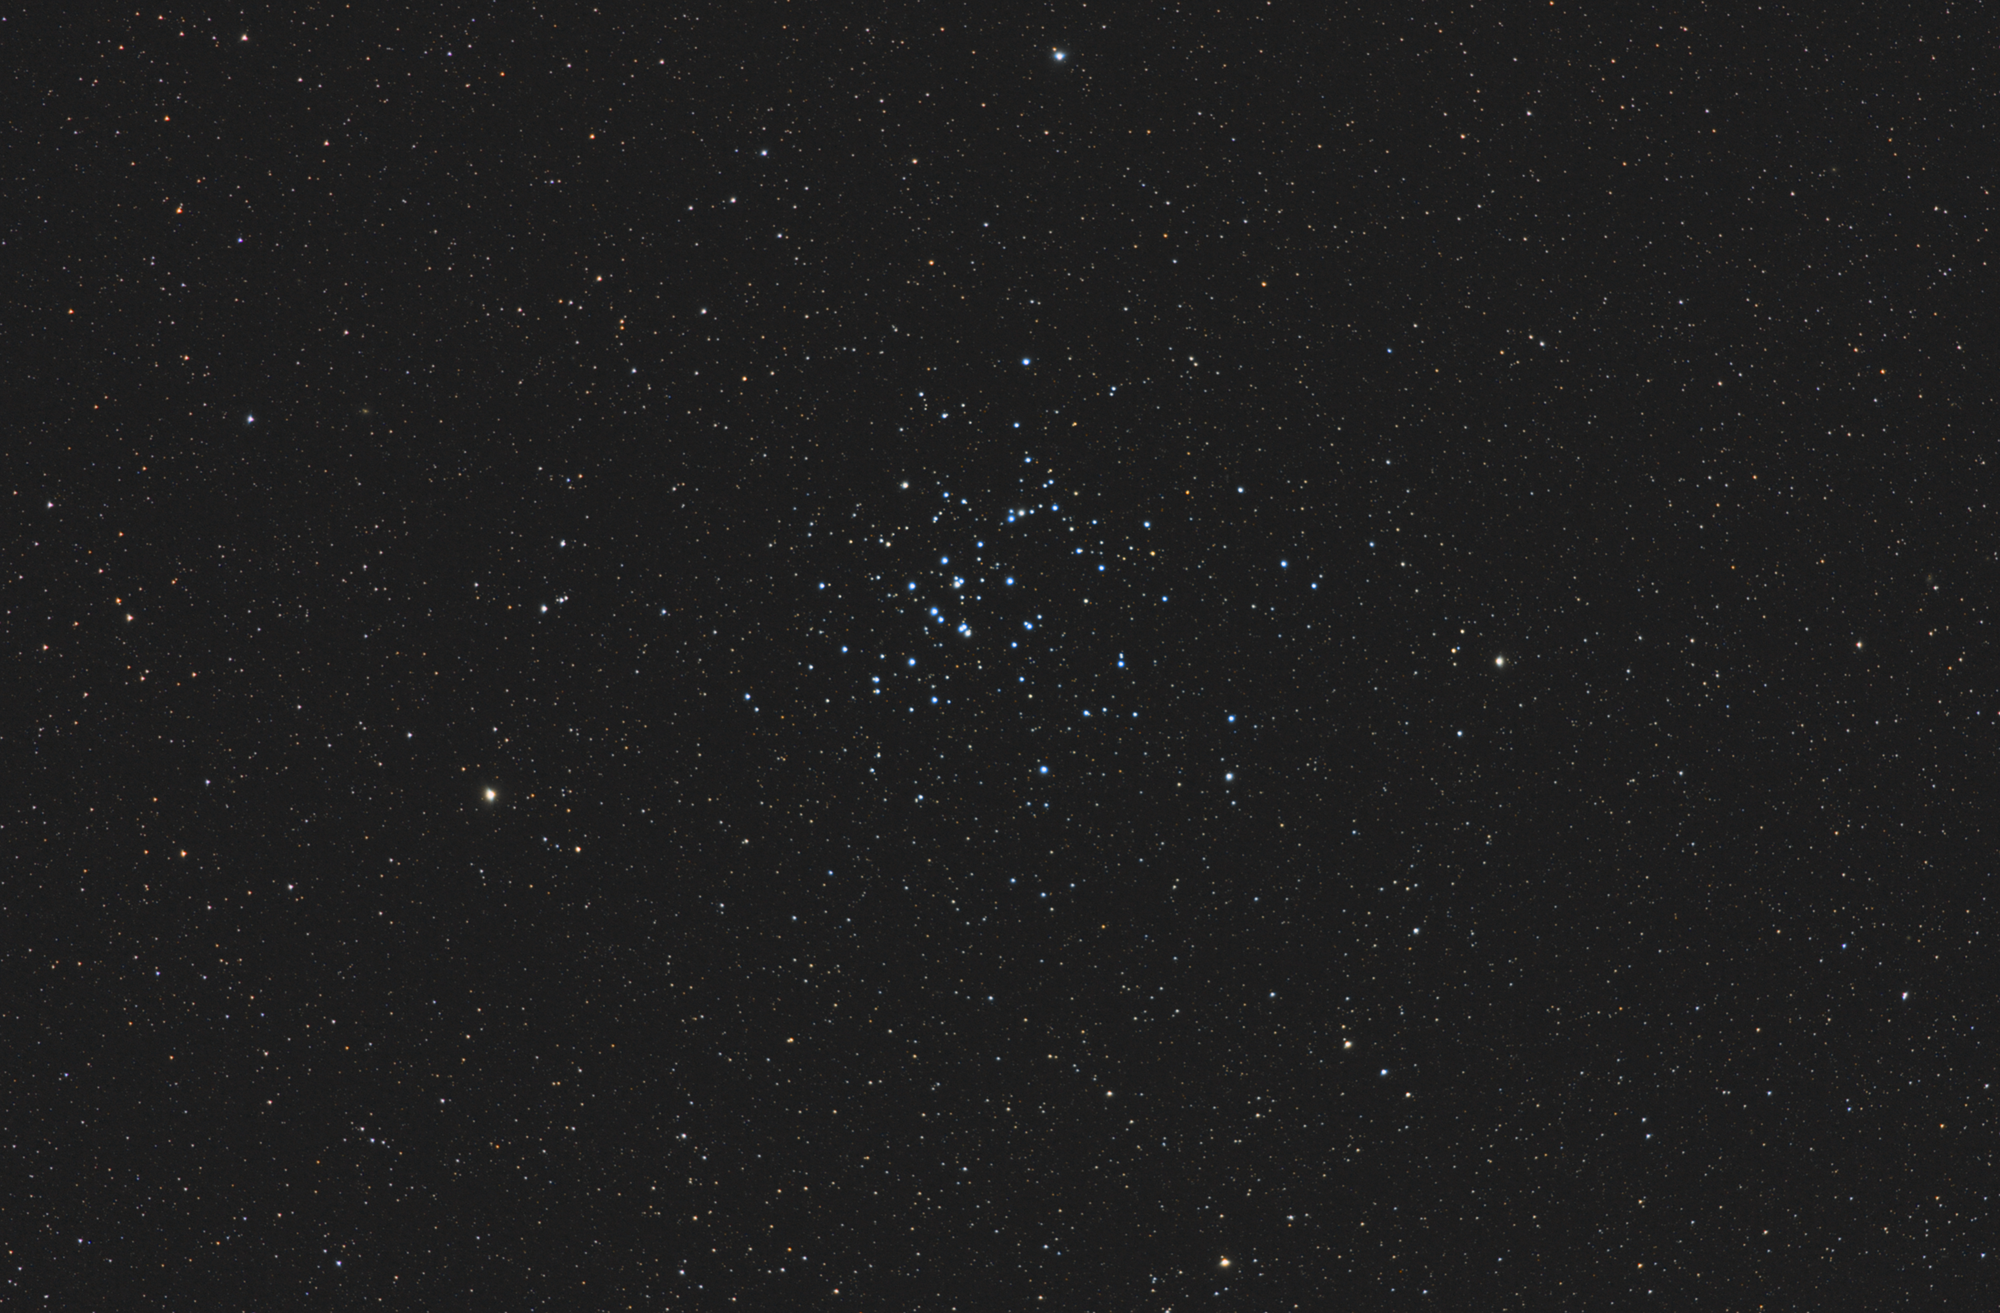 Messier 44 - Praesepe